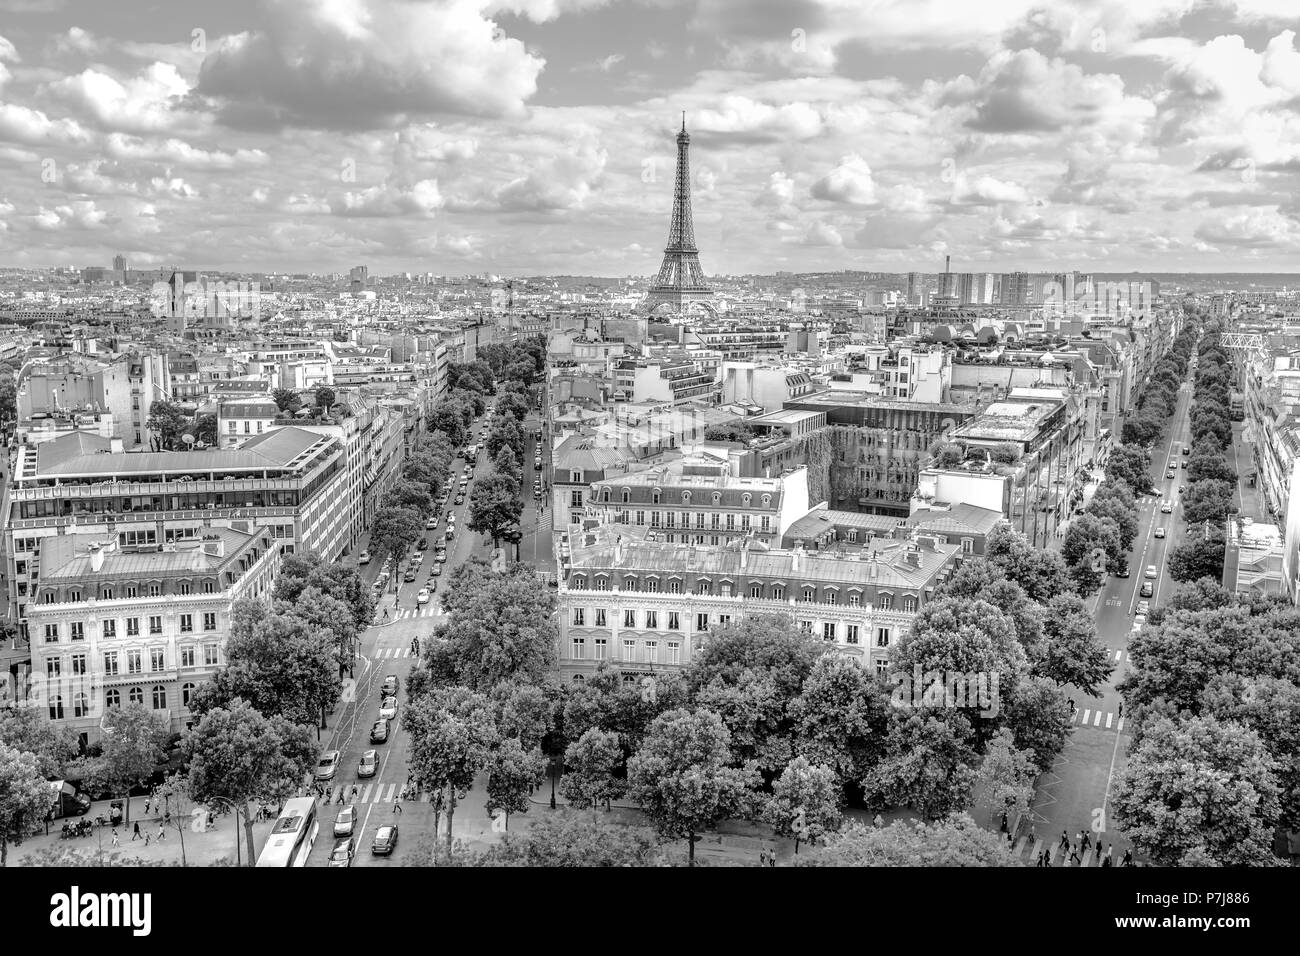 Arco di Trionfo panorama in bianco e nero. Alberi strade come Avenue Marceau, d'Iena e Kleber a Parigi, in Francia, in Europa. Vista in lontananza Tour Eiffel di Parigi nuvoloso skyline. Foto Stock